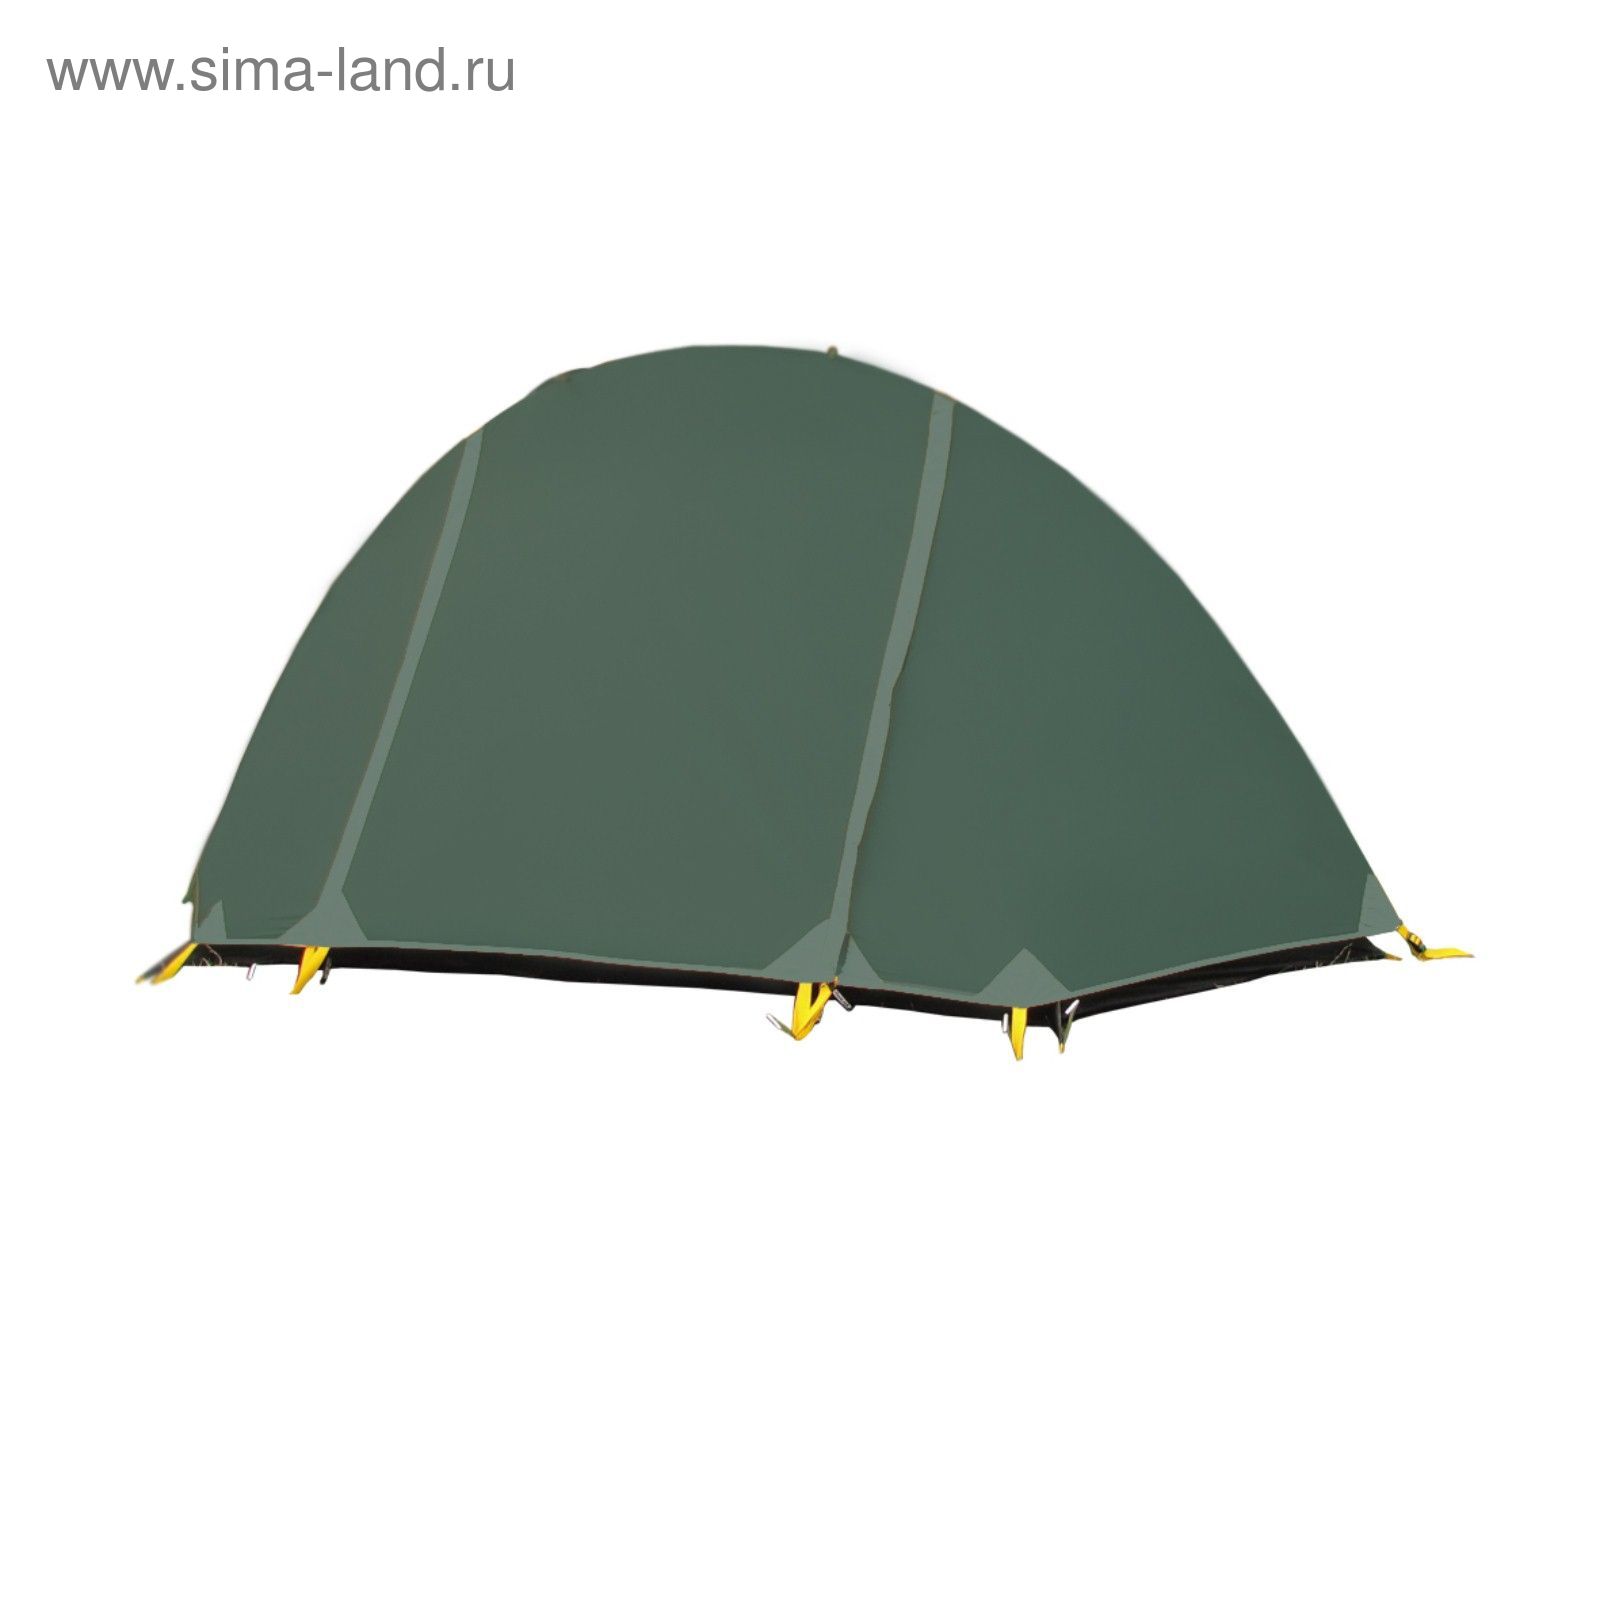 Палатка, серия "Trekking" Bike base, зеленая, одноместная